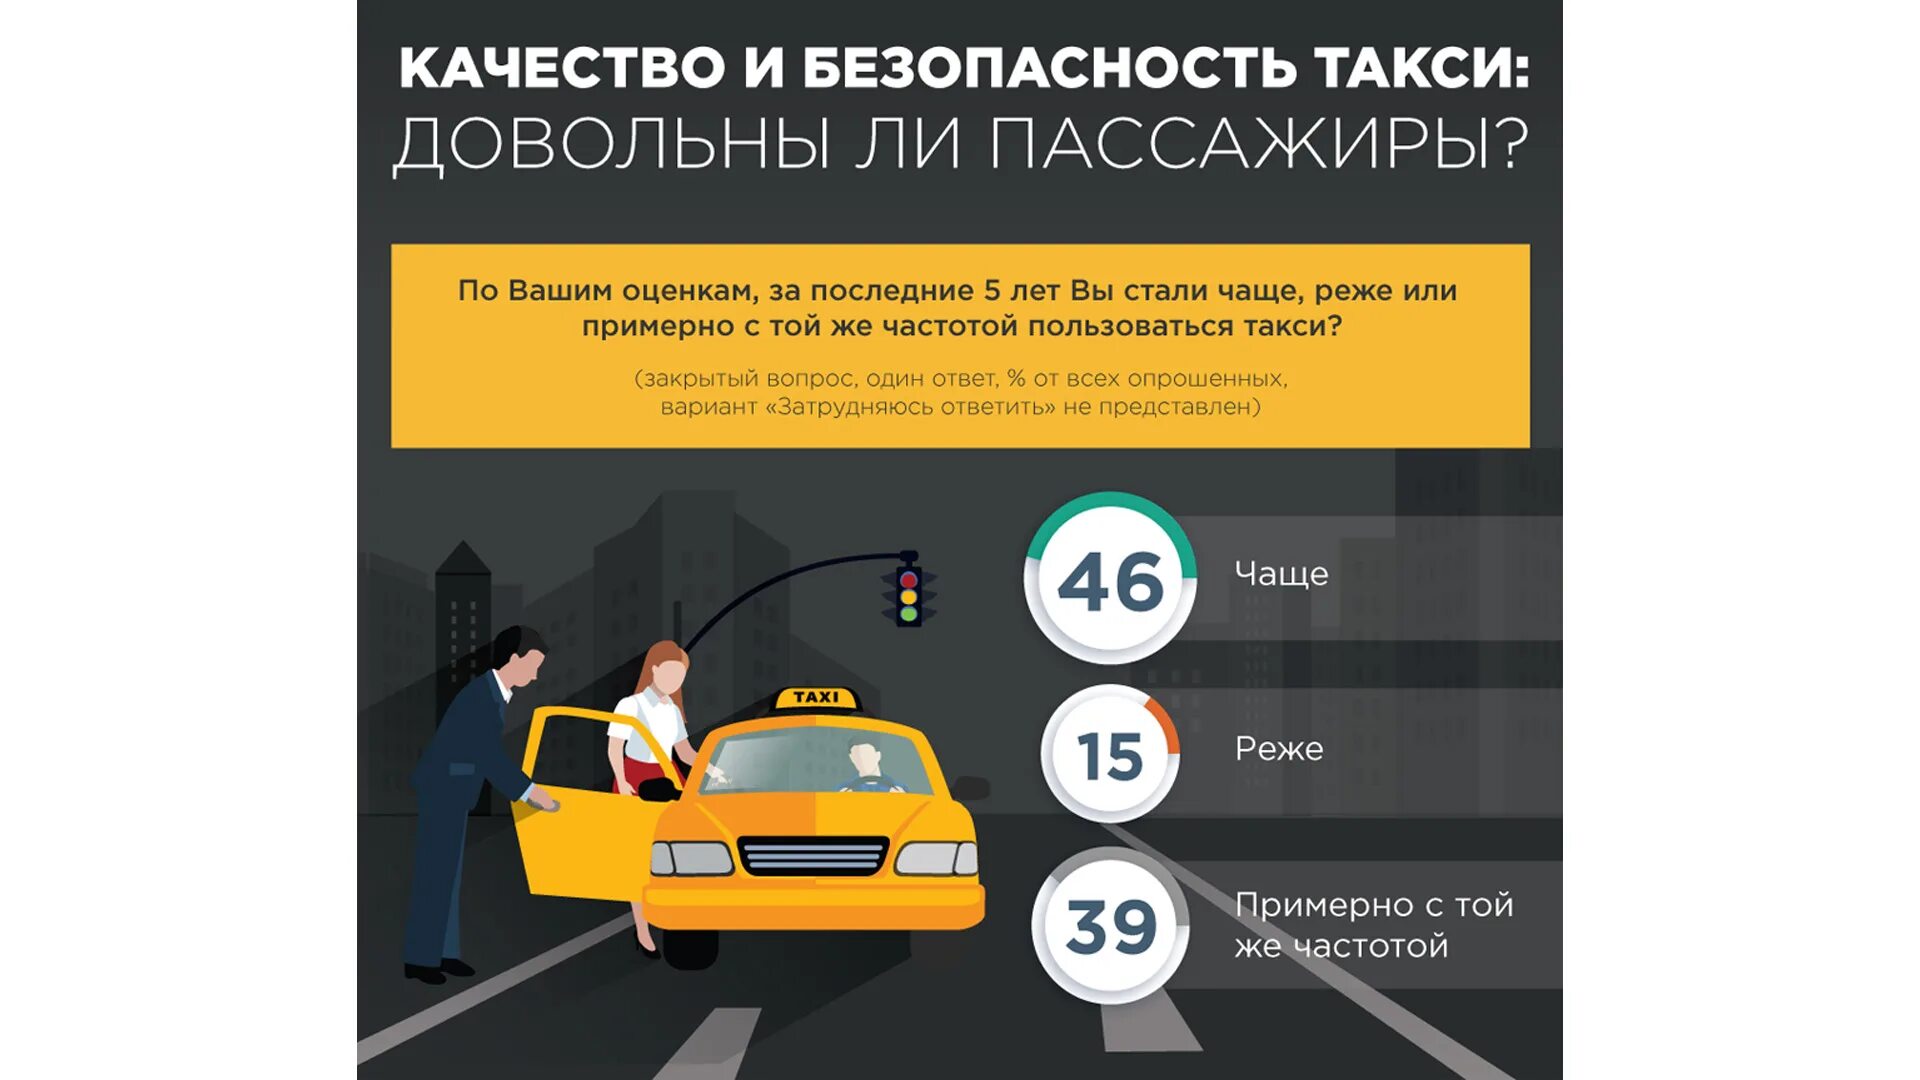 Безопасность в такси. Инфографика такси. Безопасность пассажира в такси. Безопасность клиента такси. Аналитики водитель такси